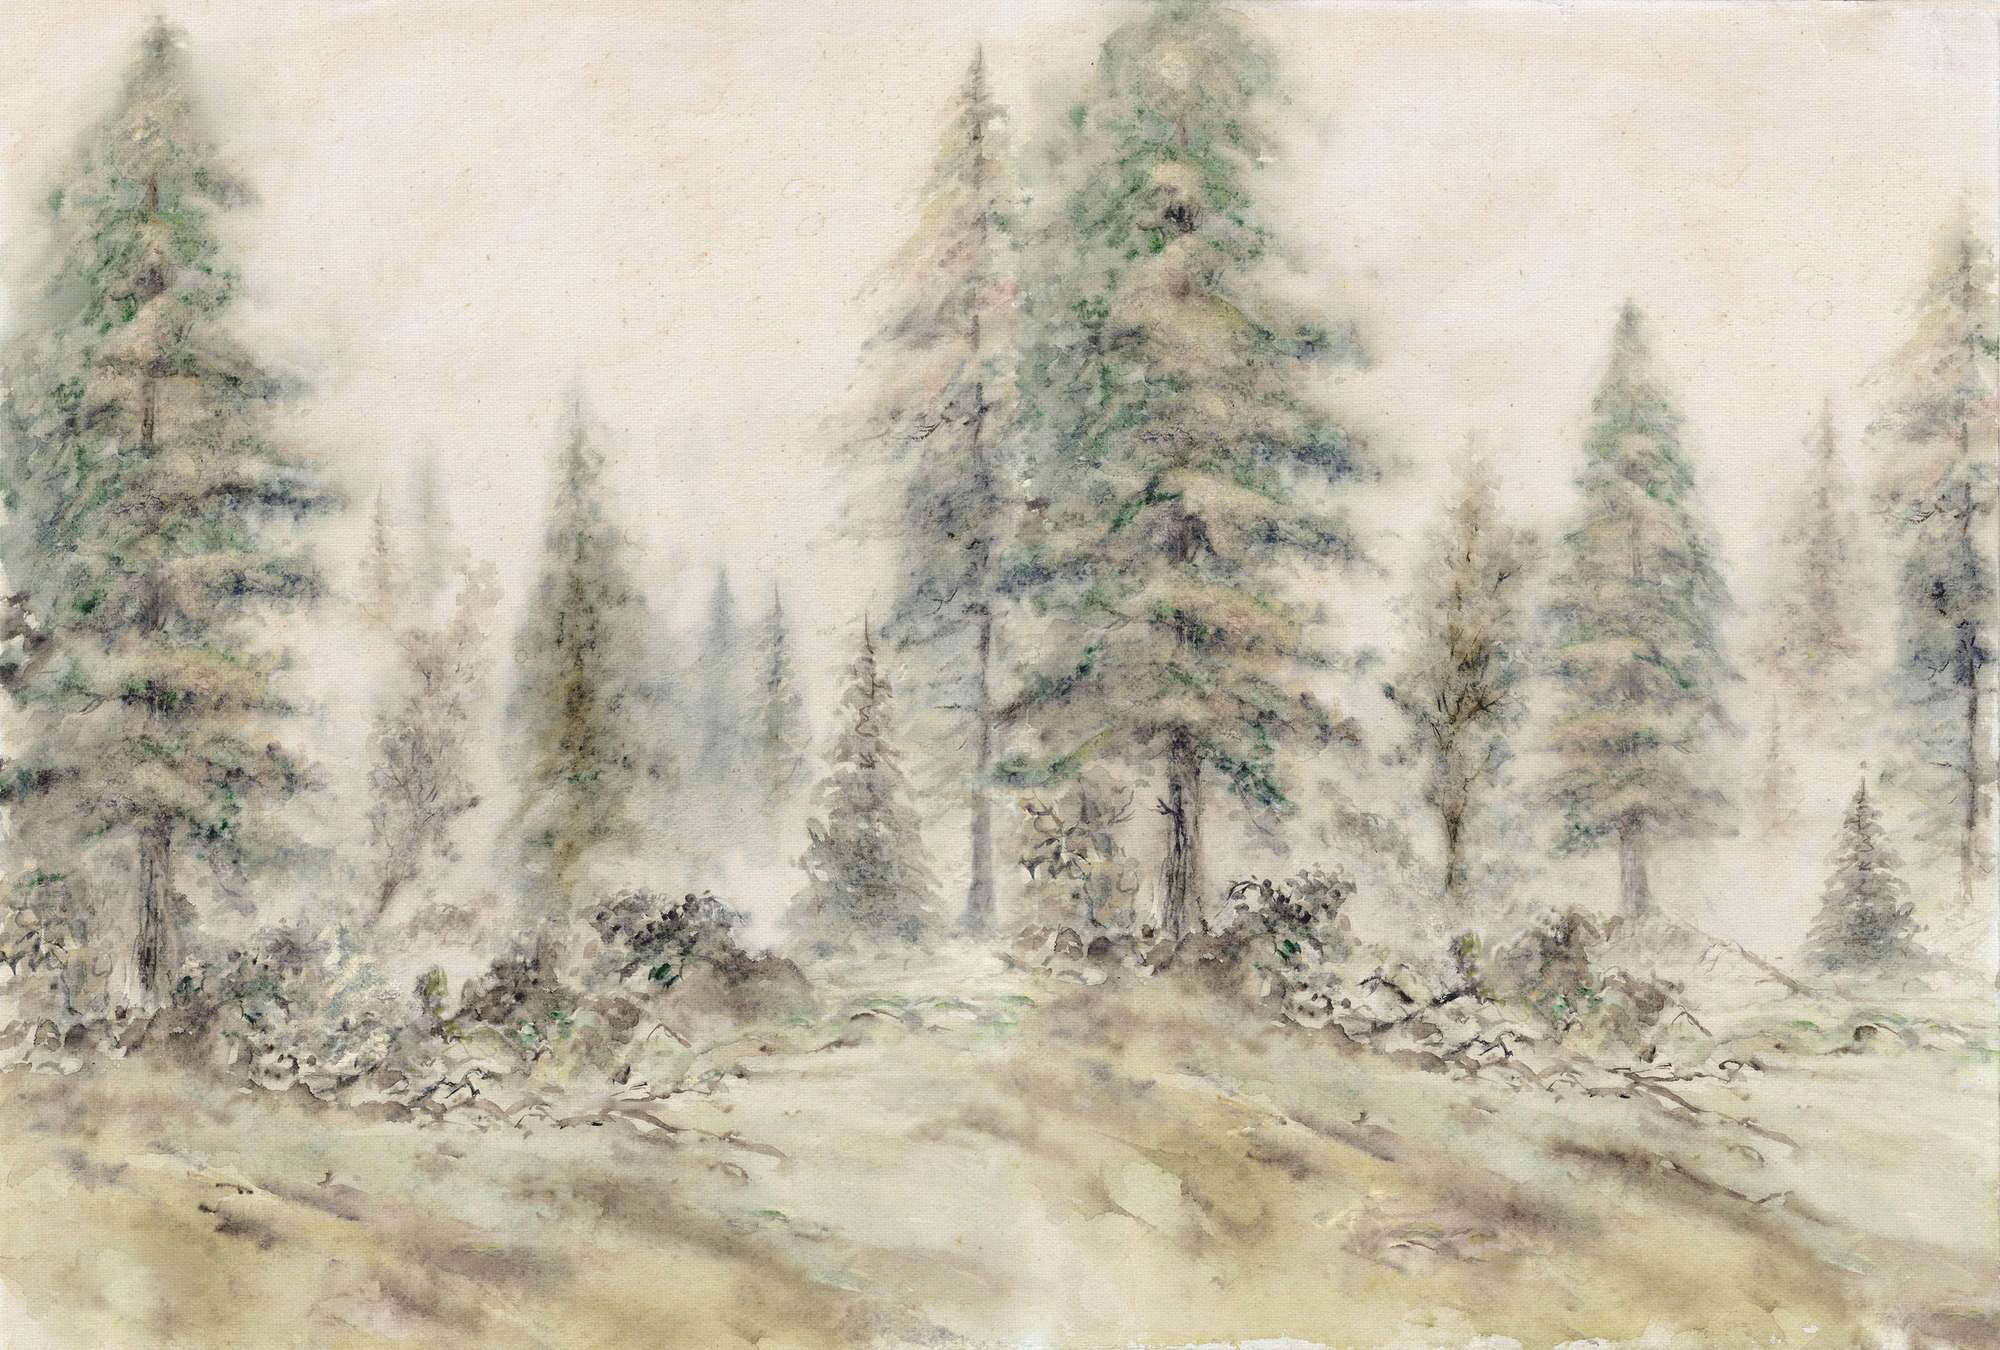             Papier peint forêt, arbres & paysage style aquarelle - marron, vert, beige
        